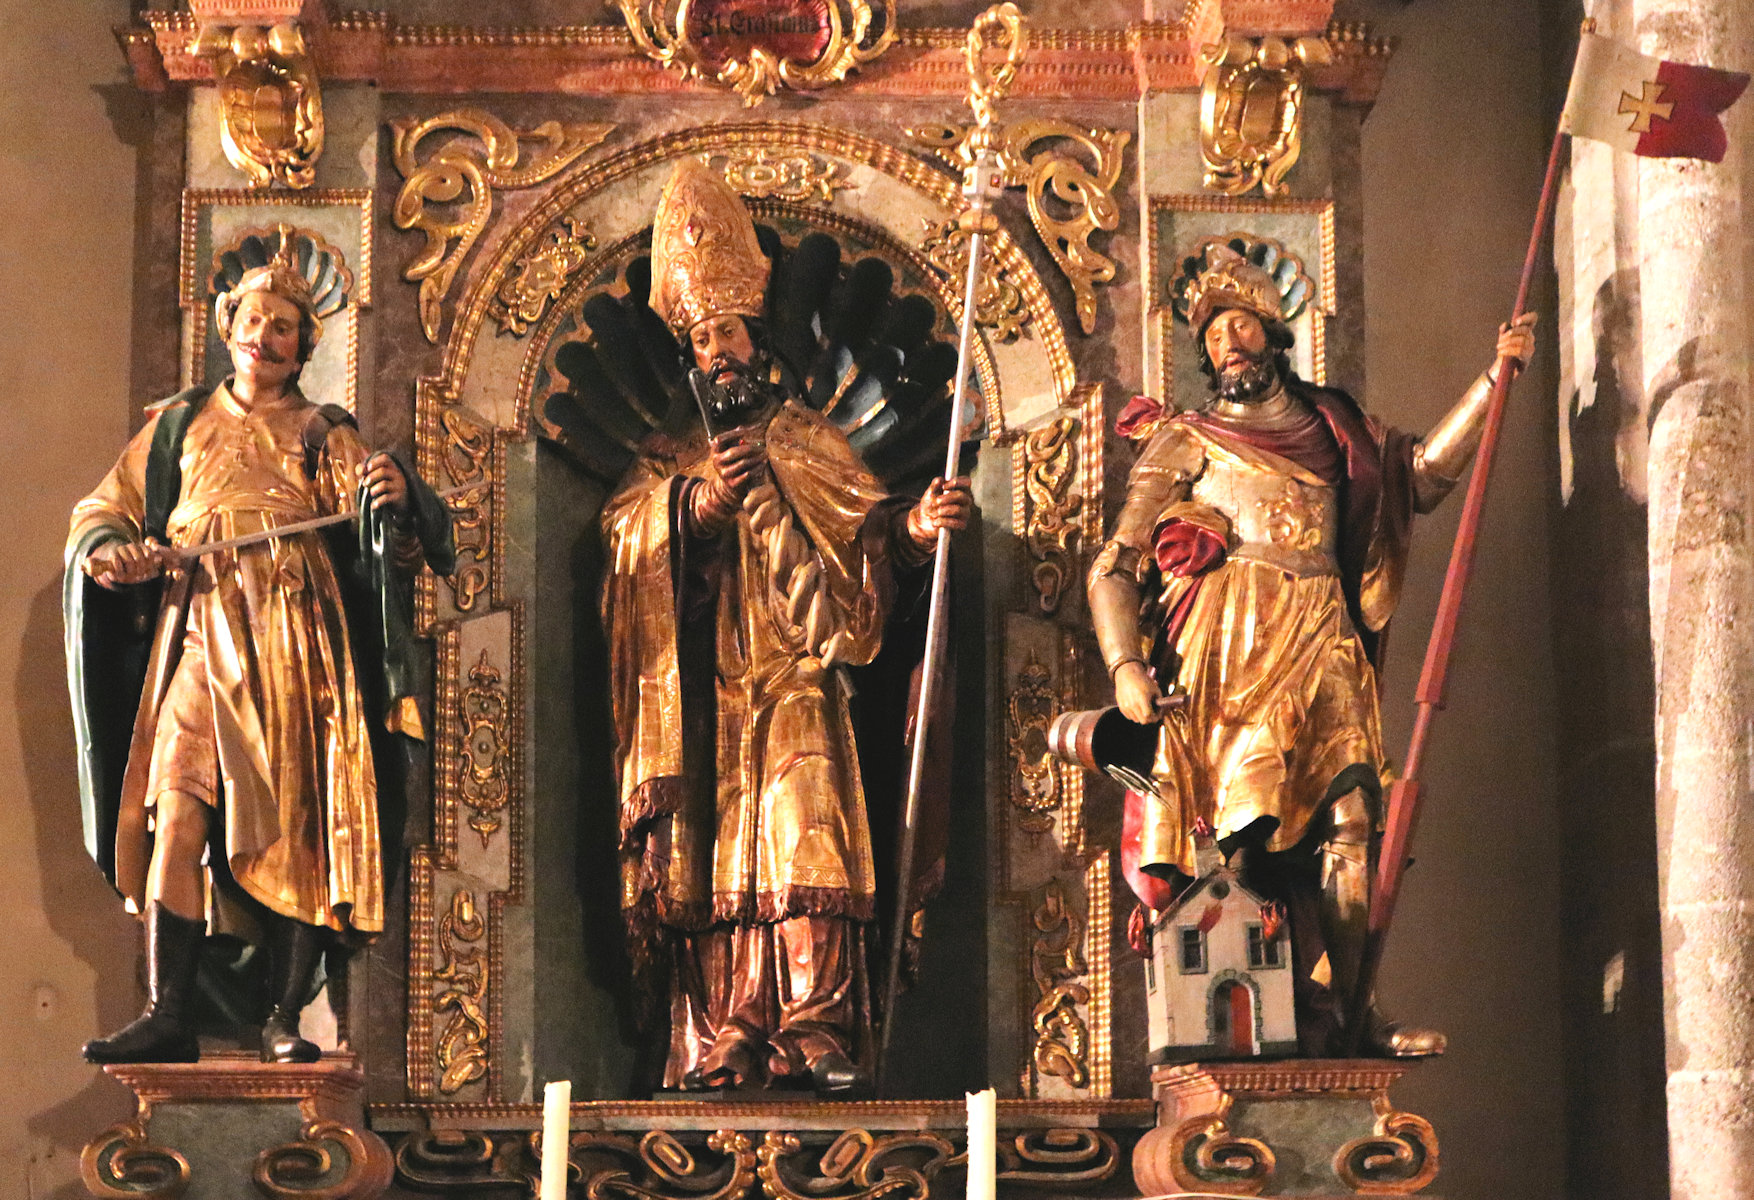 Erasmus mit Martin von Tours (links) und Erasmus mit Martin von Tours (links) und Florian (rechts), Altar in der Pfarrkirche in Thalheim bei WelsFlorian (rechts), Altar in der Pfarrkirche in Thalheim bei Wels